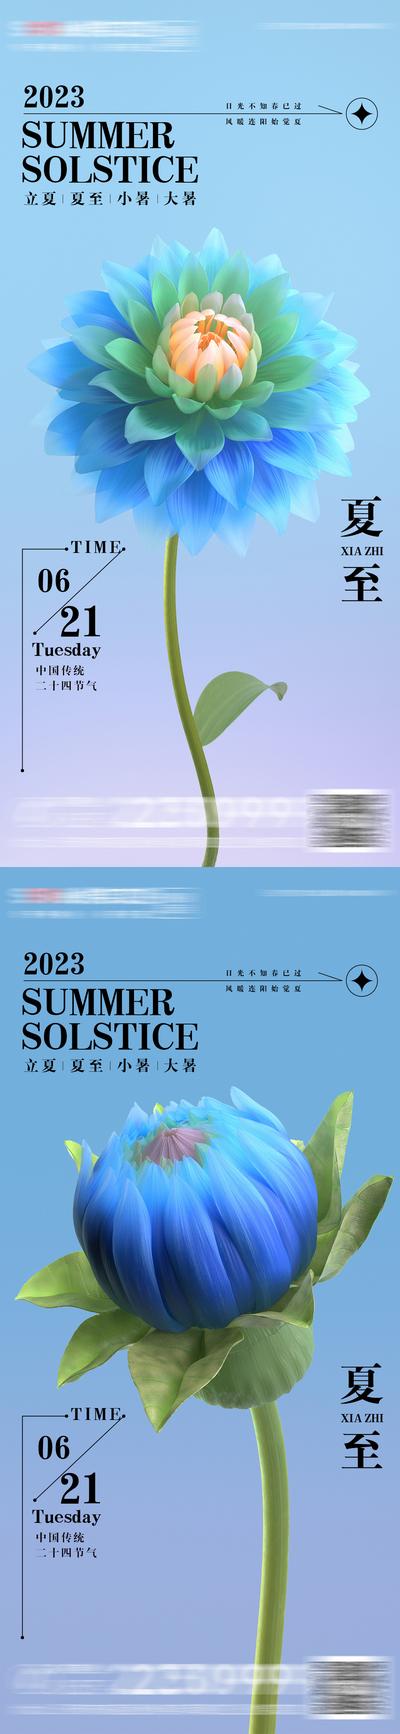 南门网 广告 海报 夏至 立夏 大暑 小暑 房地产 二十四节气 大气 简约 夏花 排版 设计